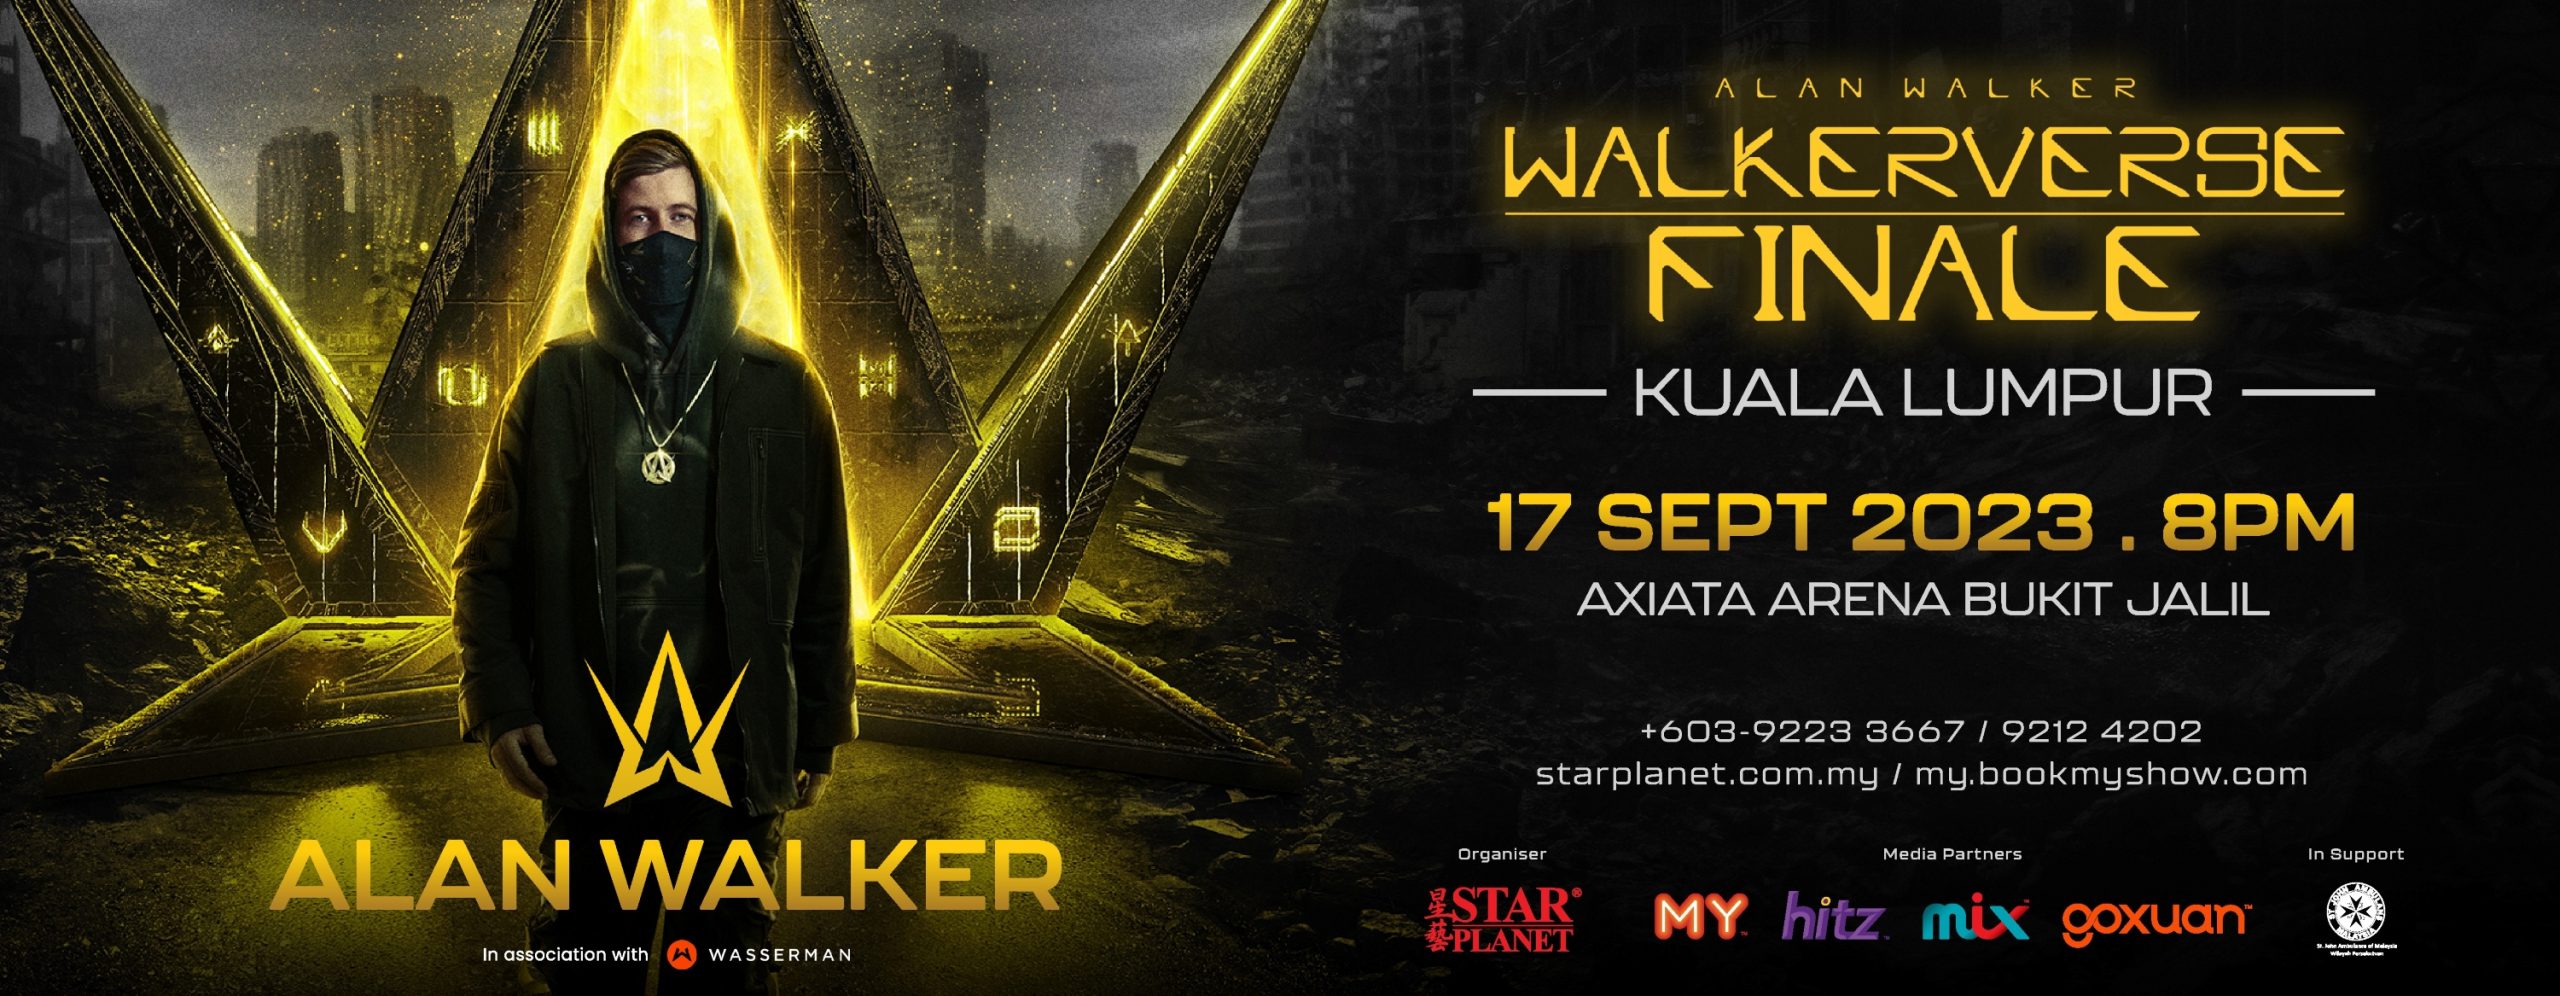 alan walker malaysia tour 2023